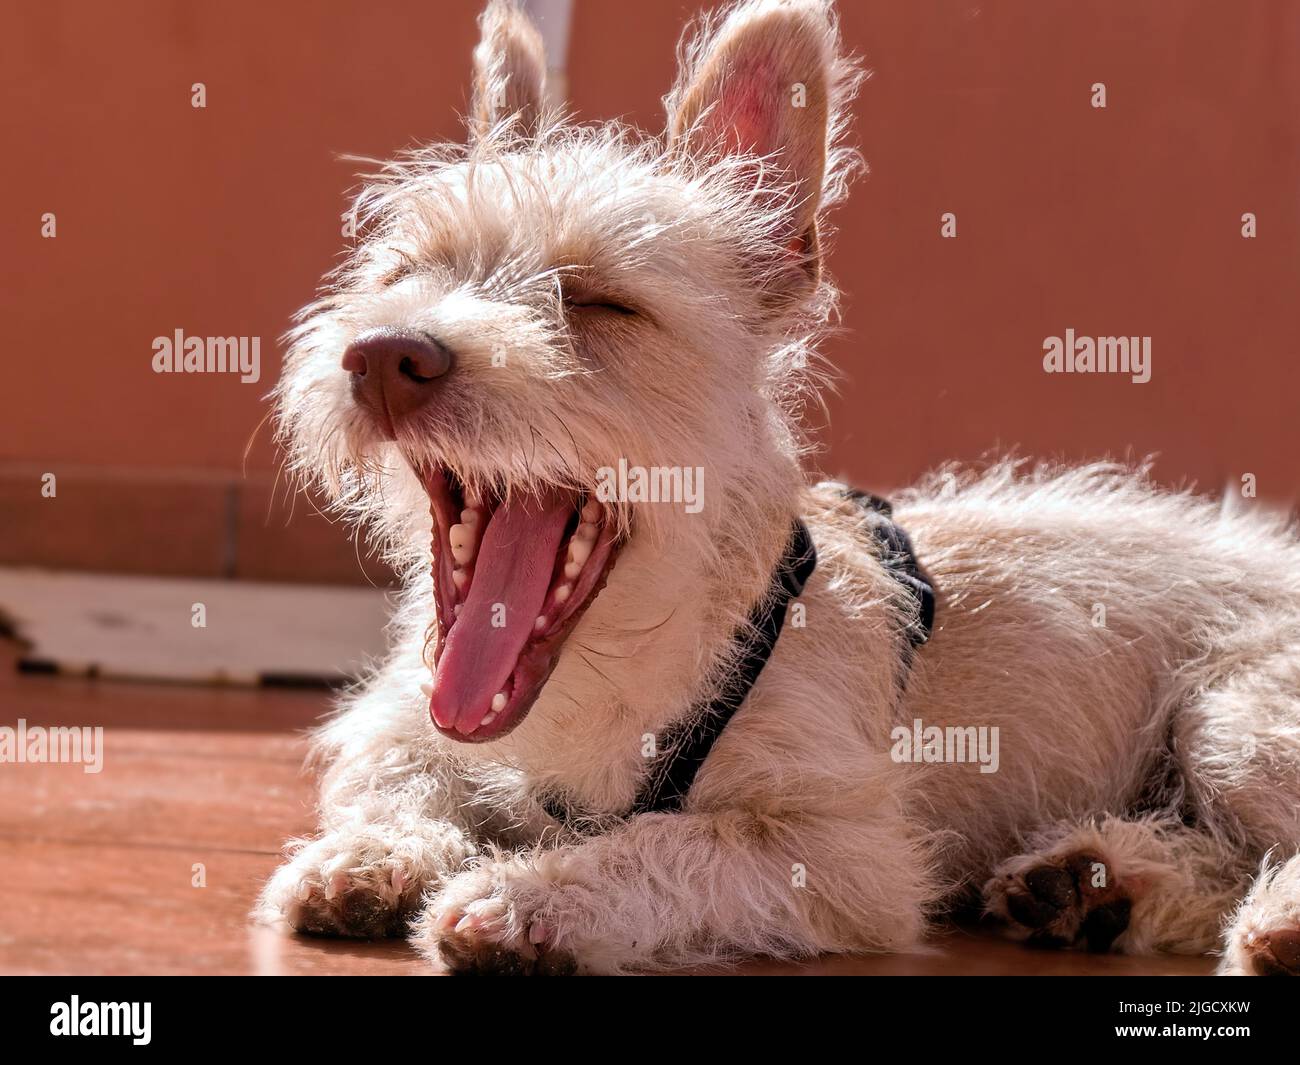 Nahaufnahme eines kleinen beigefarbenen Hundes, einer Mischung aus Podenco Portugiesisch und West Highland Terrier. Der Hund liegt mit weit geöffnetem Mund. Stockfoto